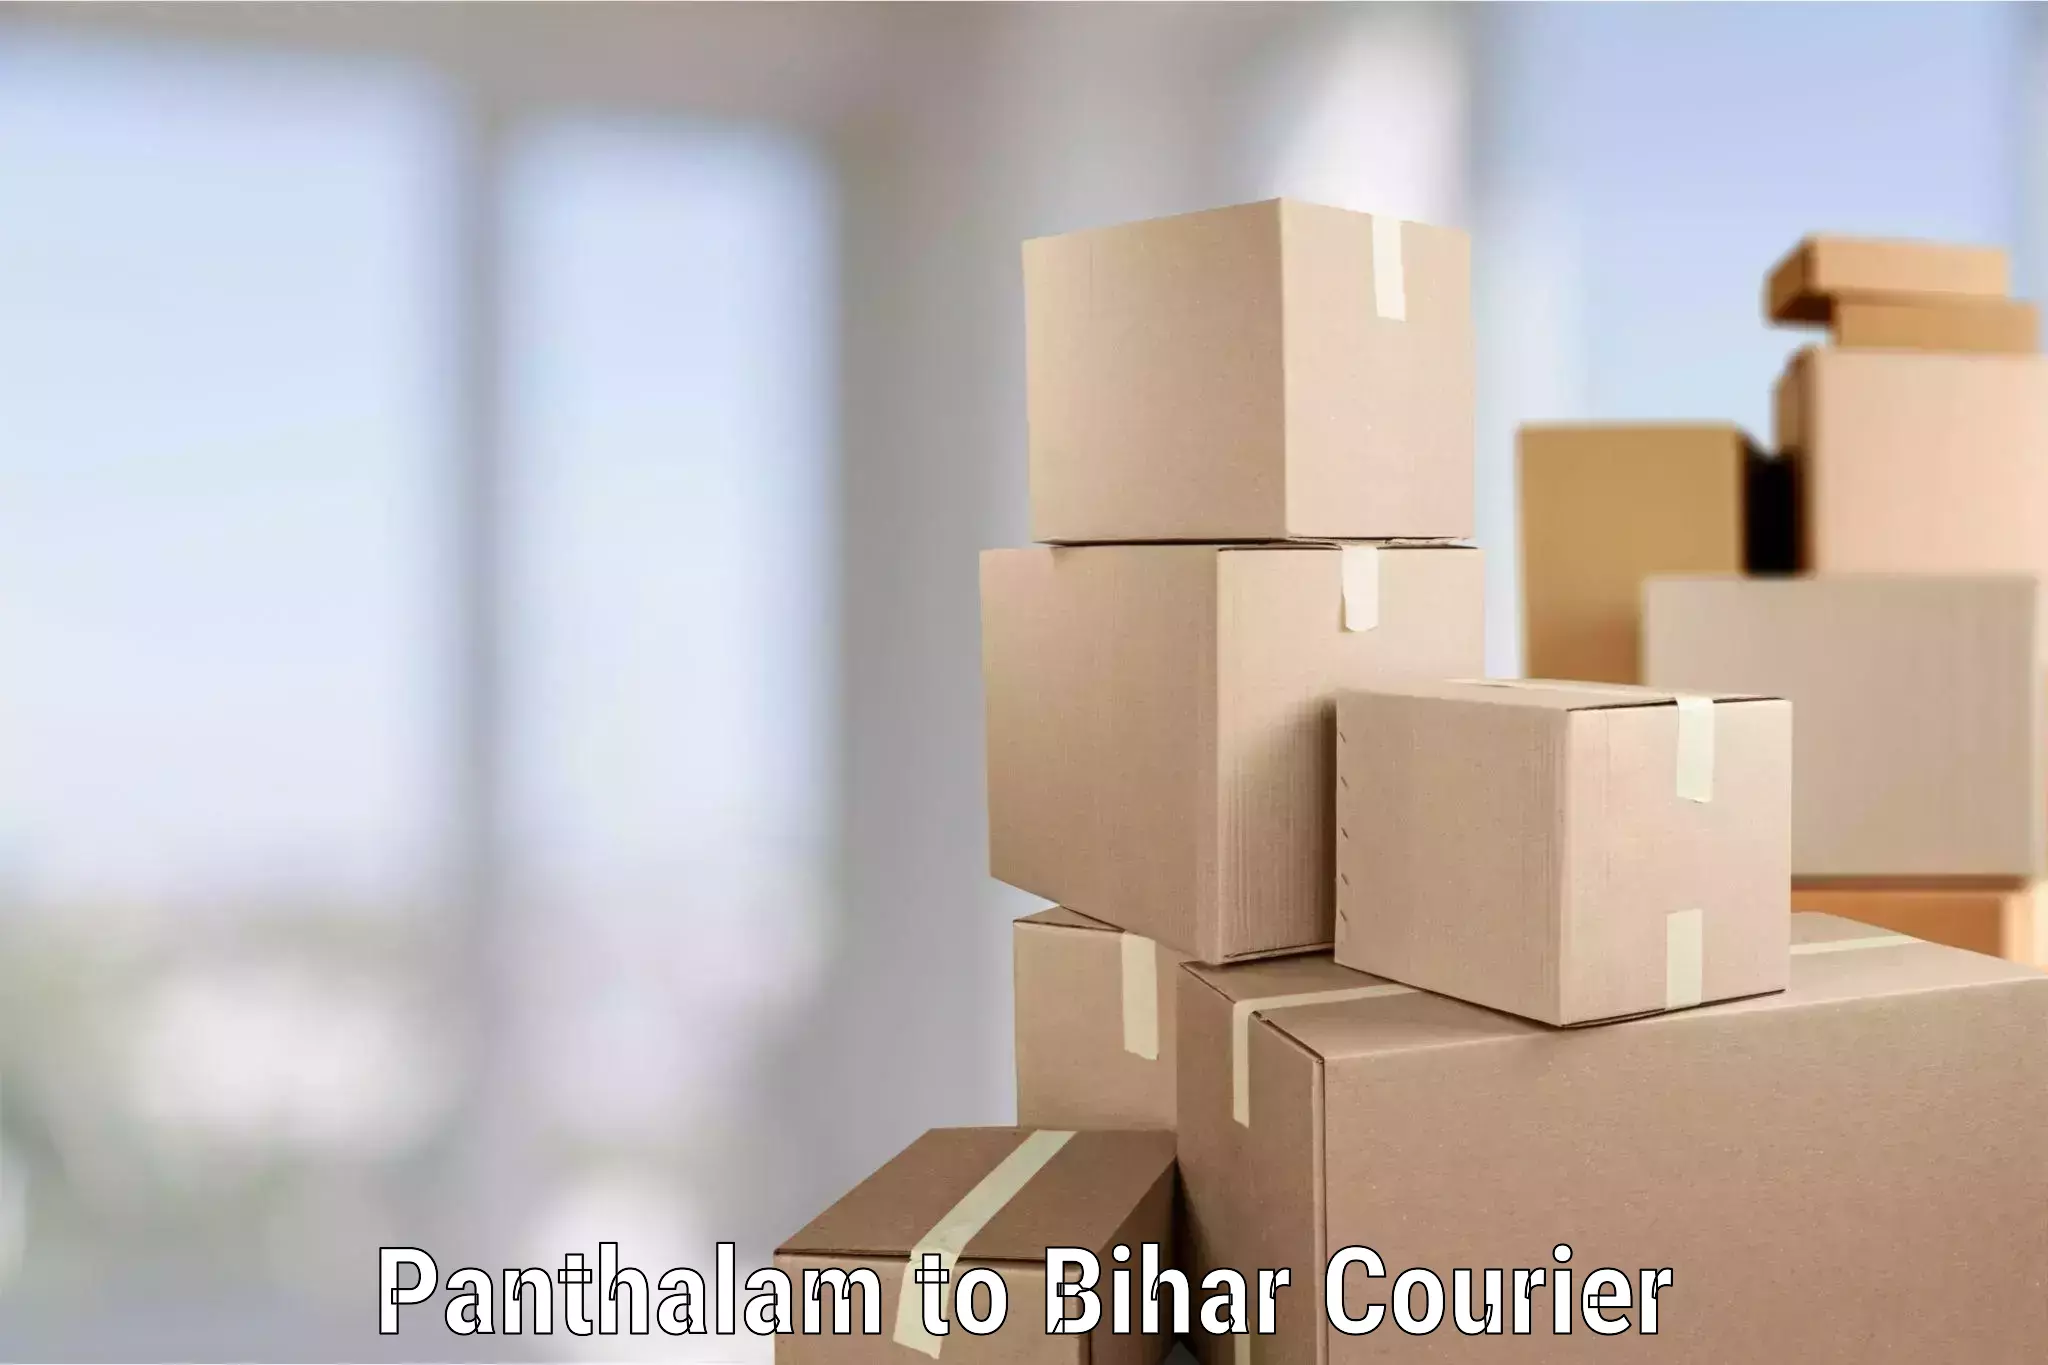 Stress-free household moving Panthalam to Alamnagar